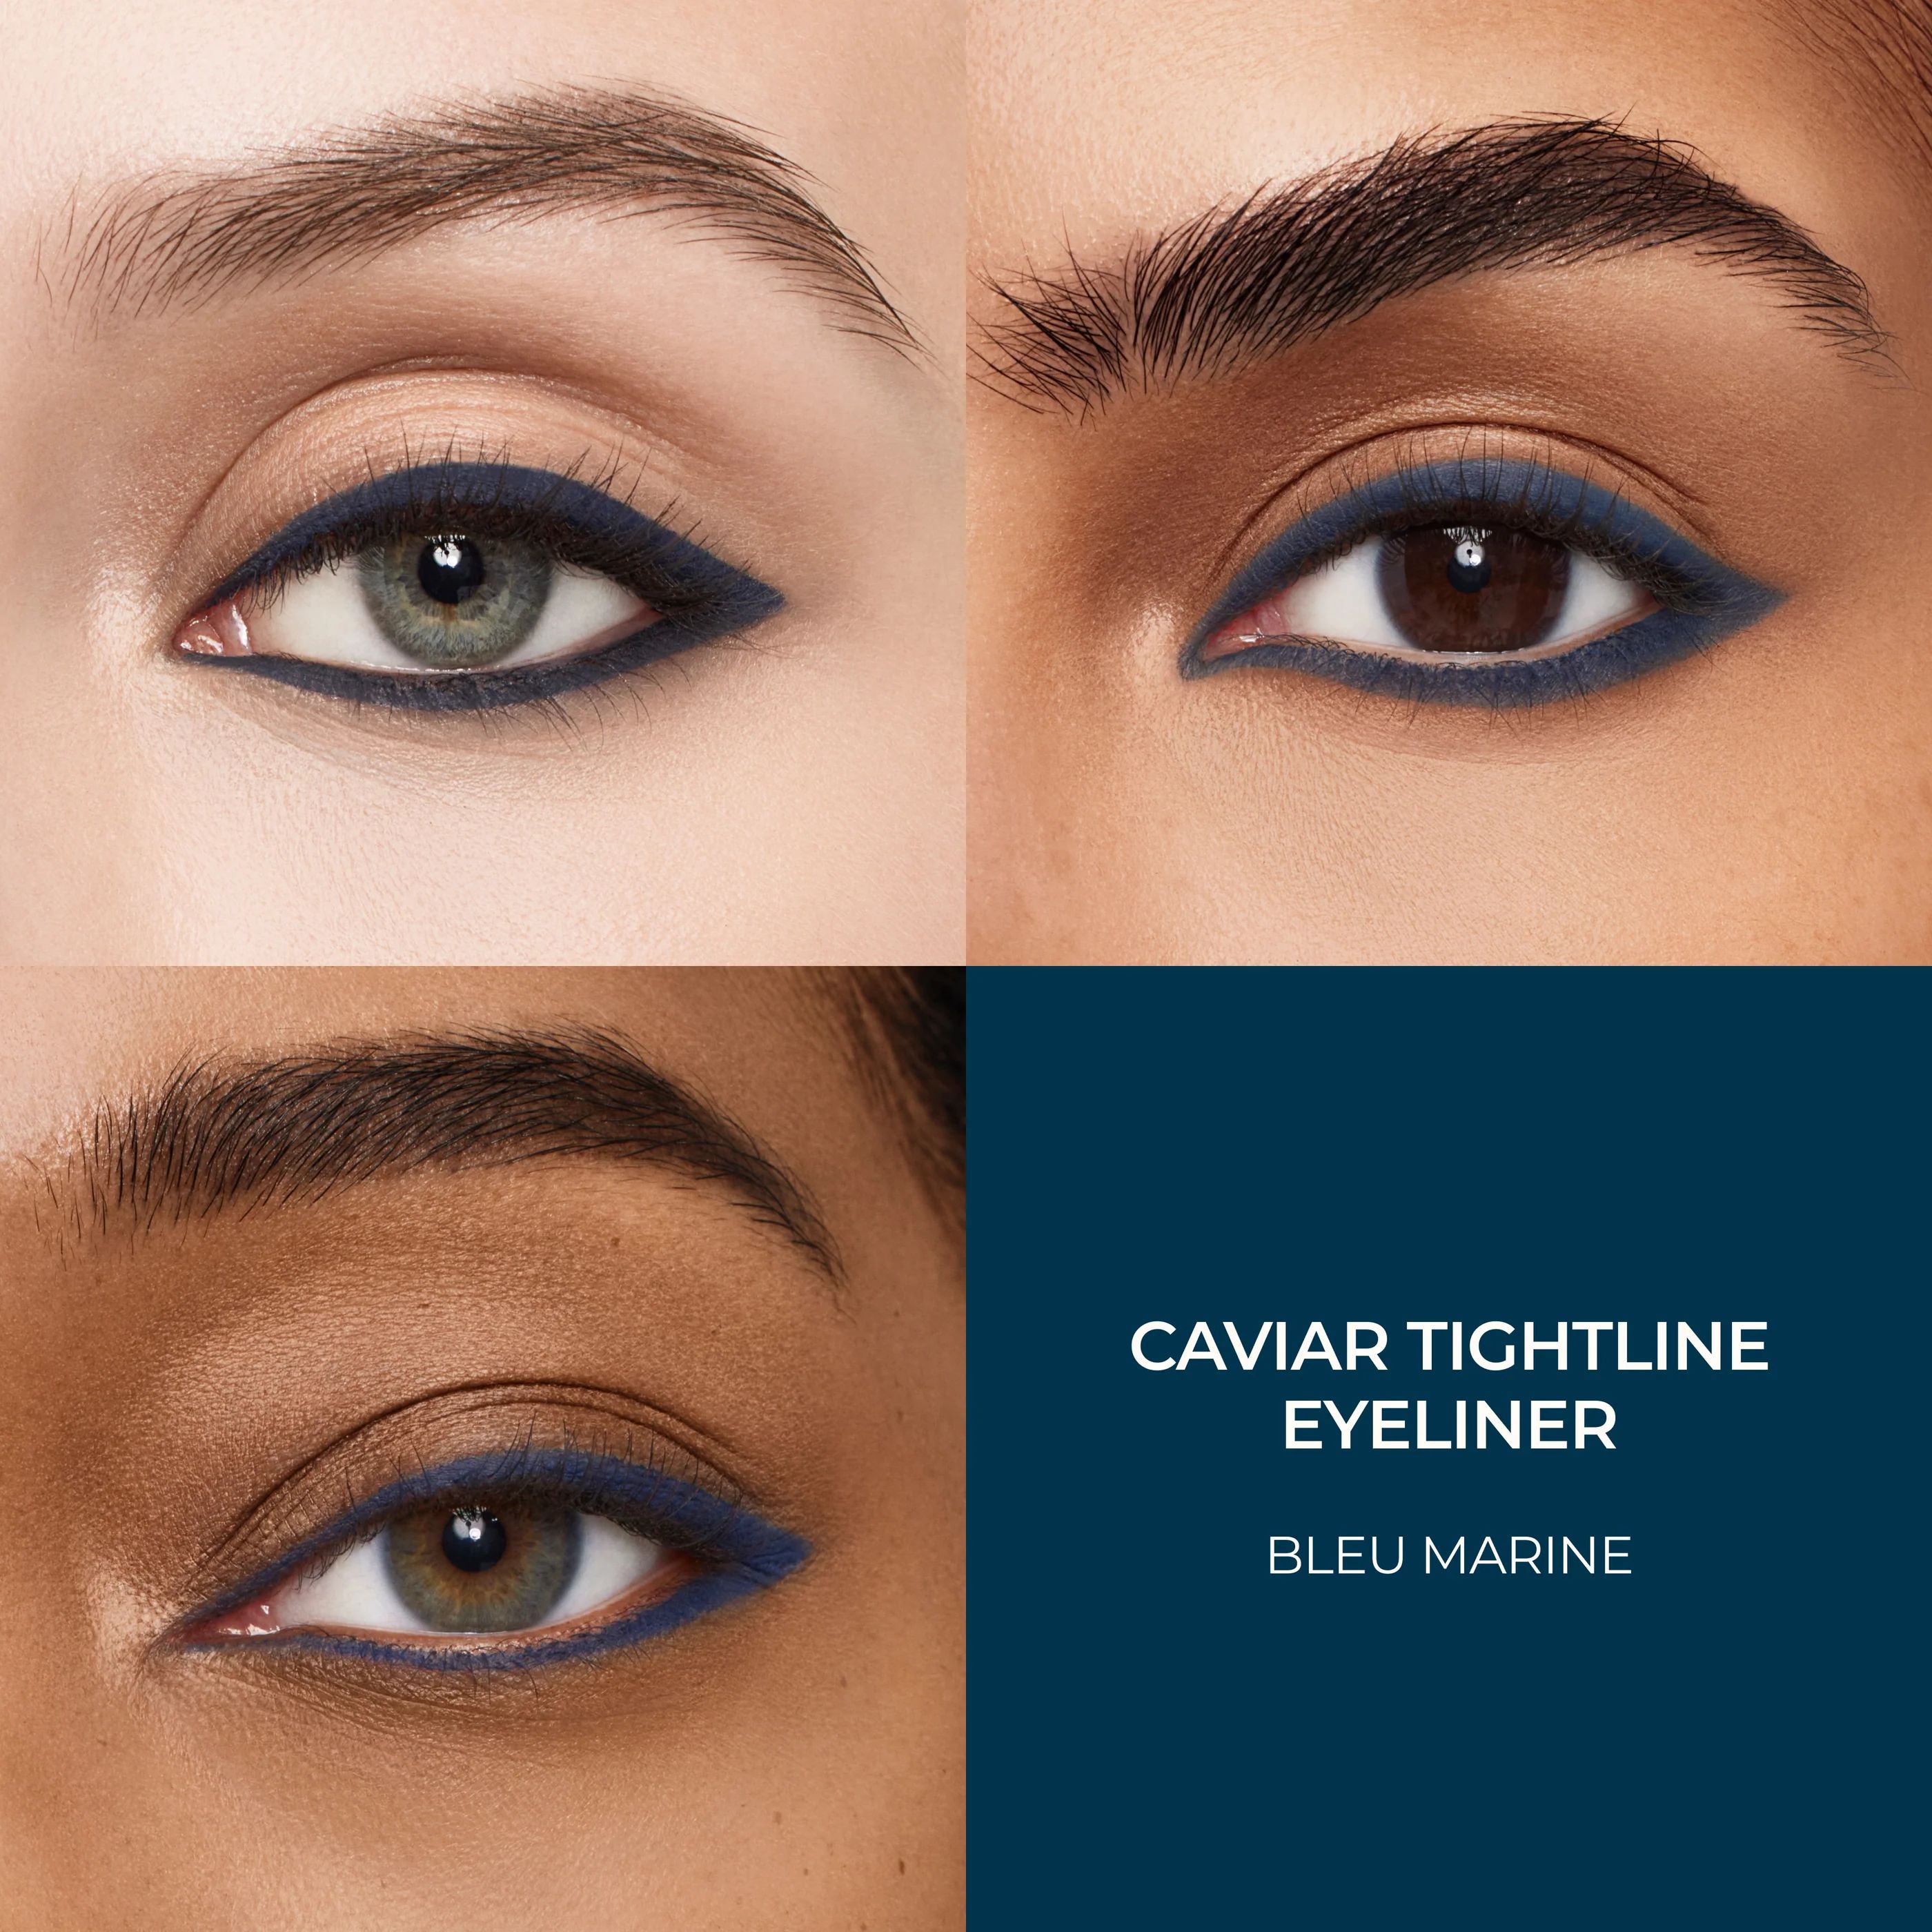 Caviar Tightline Eyeliner | Laura Mercier